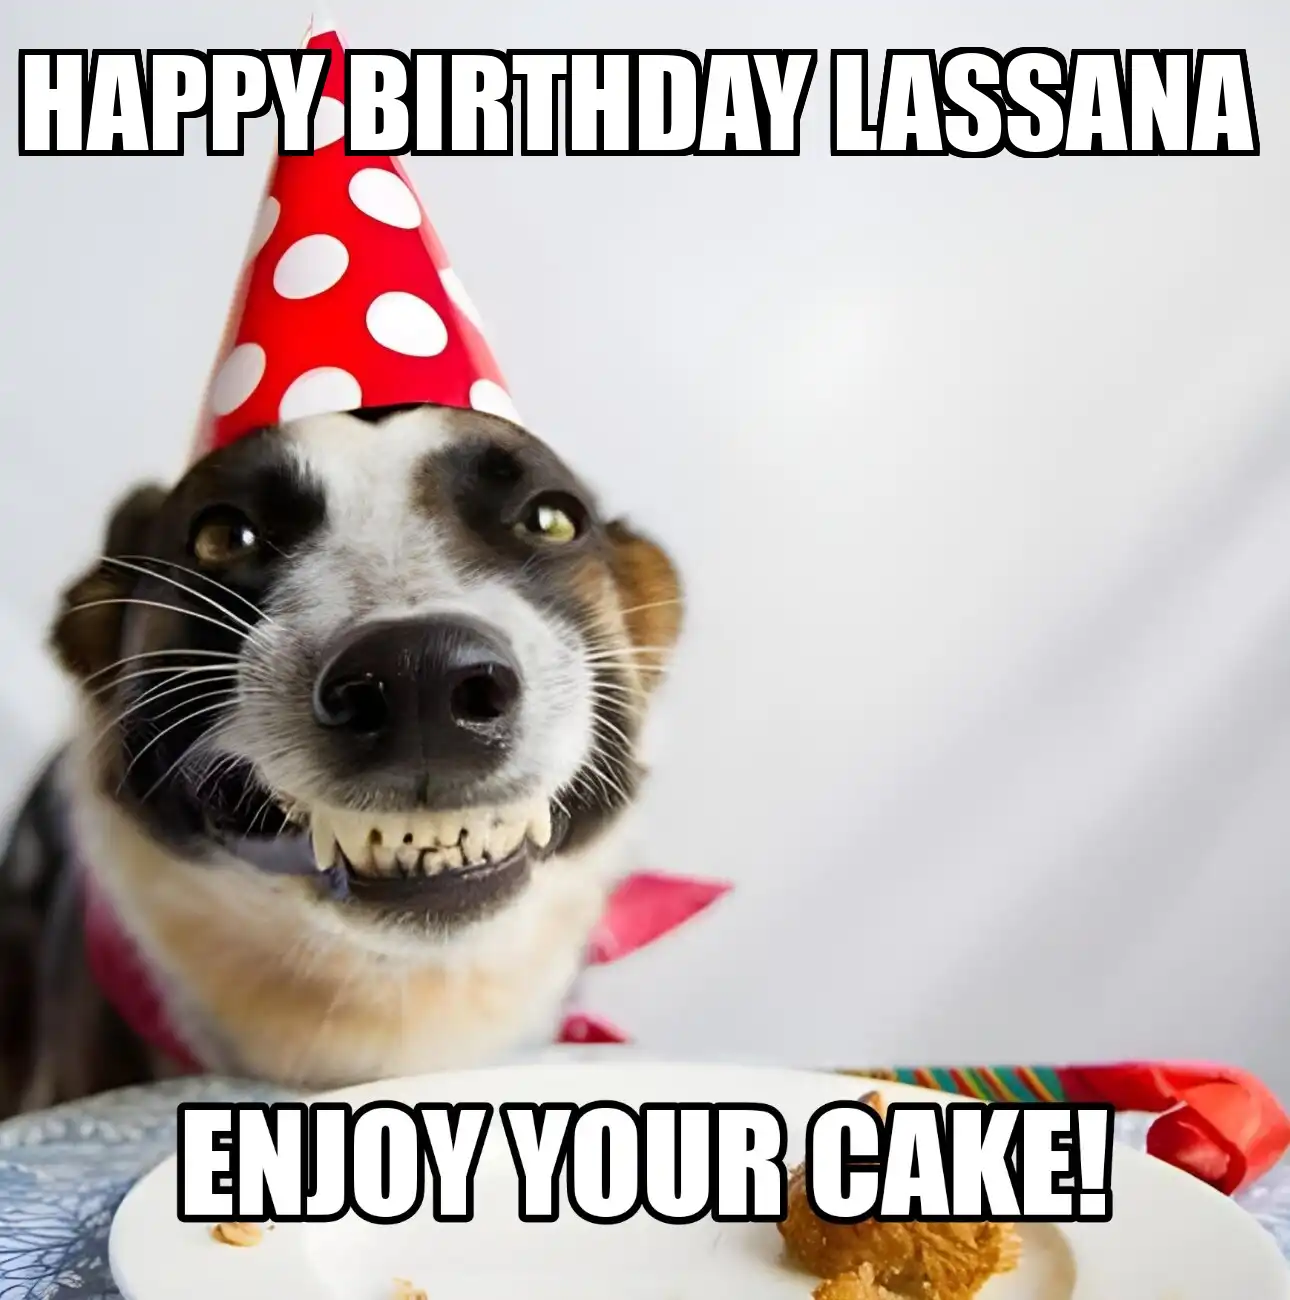 Happy Birthday Lassana Enjoy Your Cake Dog Meme